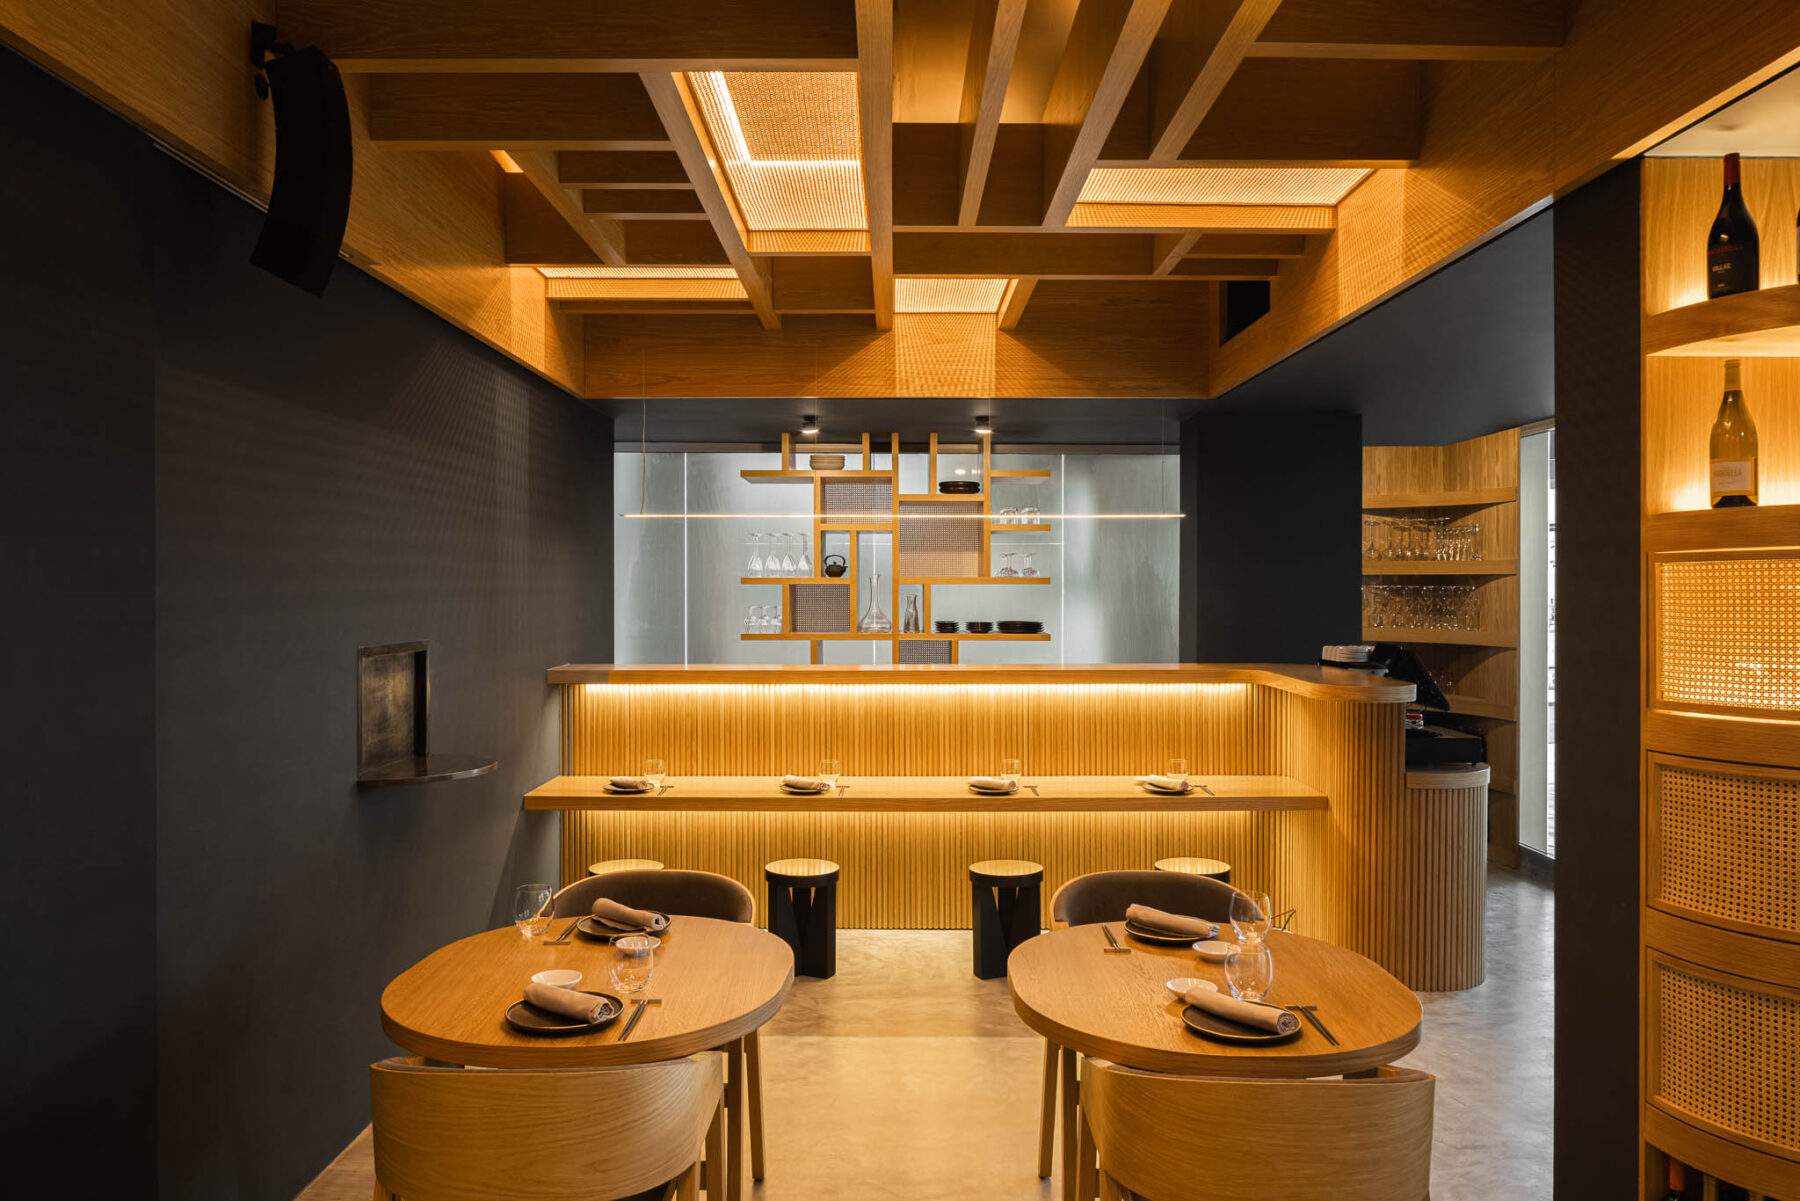 Restaurante Fuji nos Açores com Arquitectura Sequeira Dias Arqu